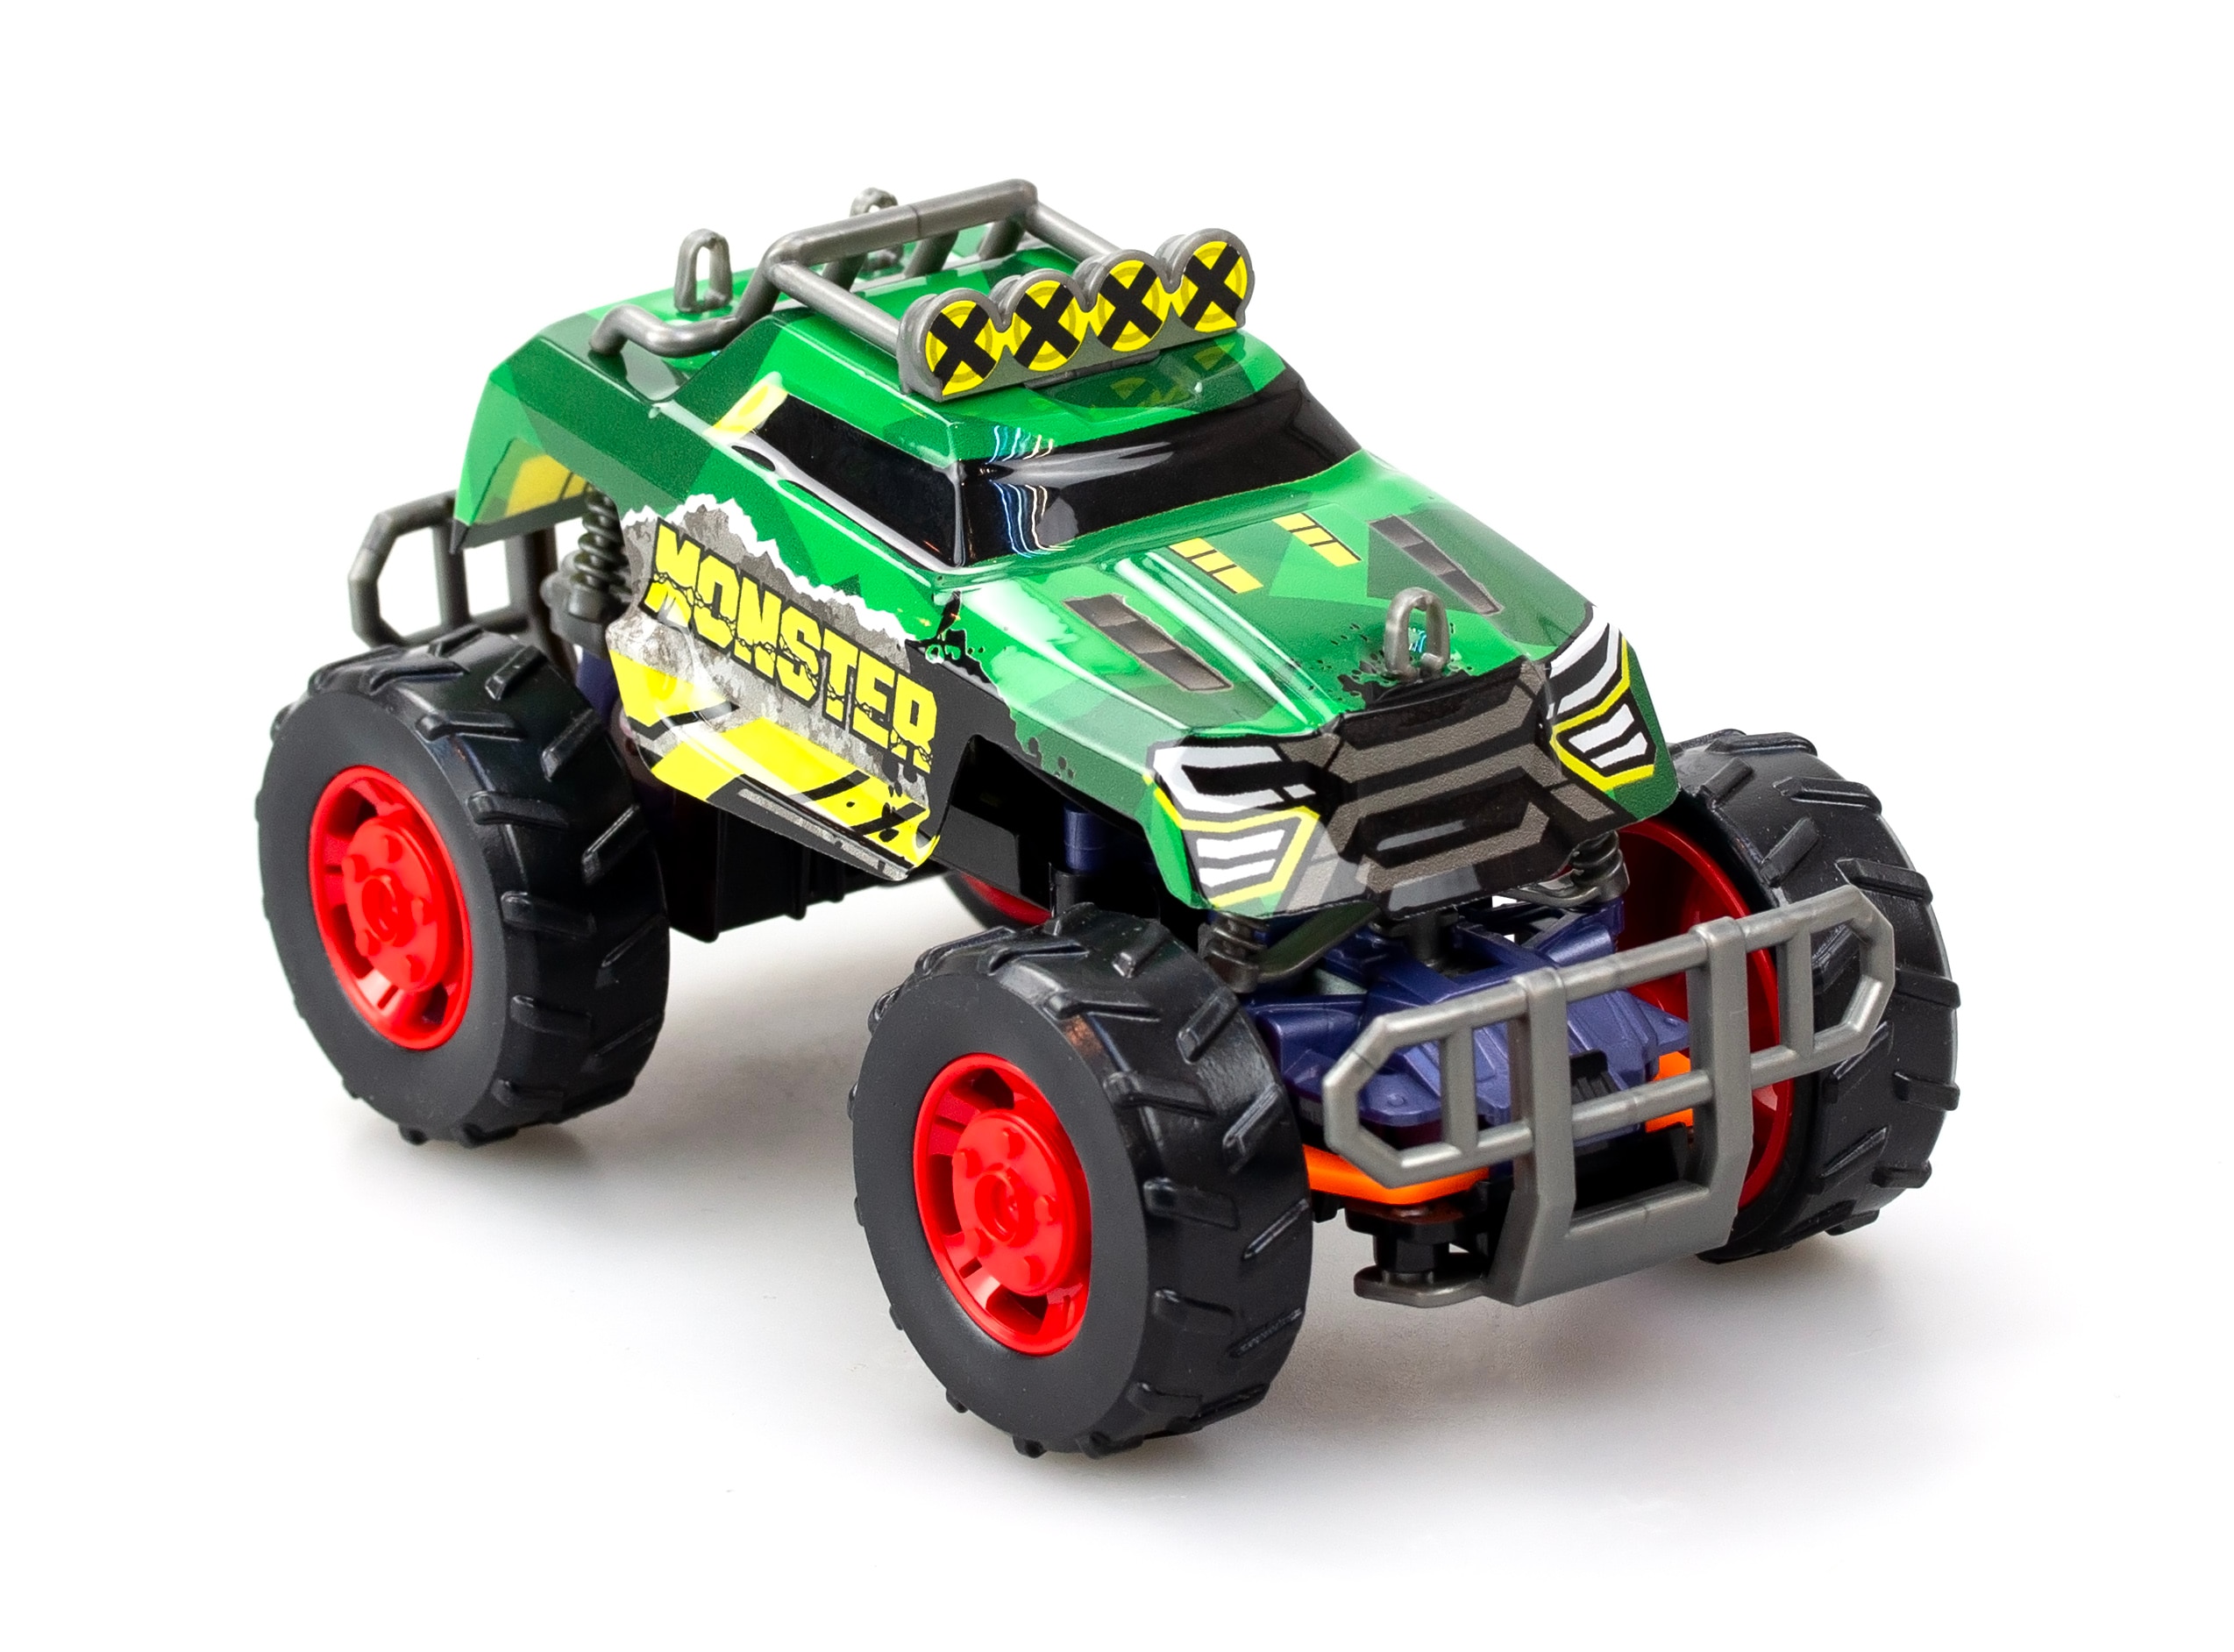 Radiostyrd Bil Build 2 Drive - Mighty Crawler, grön